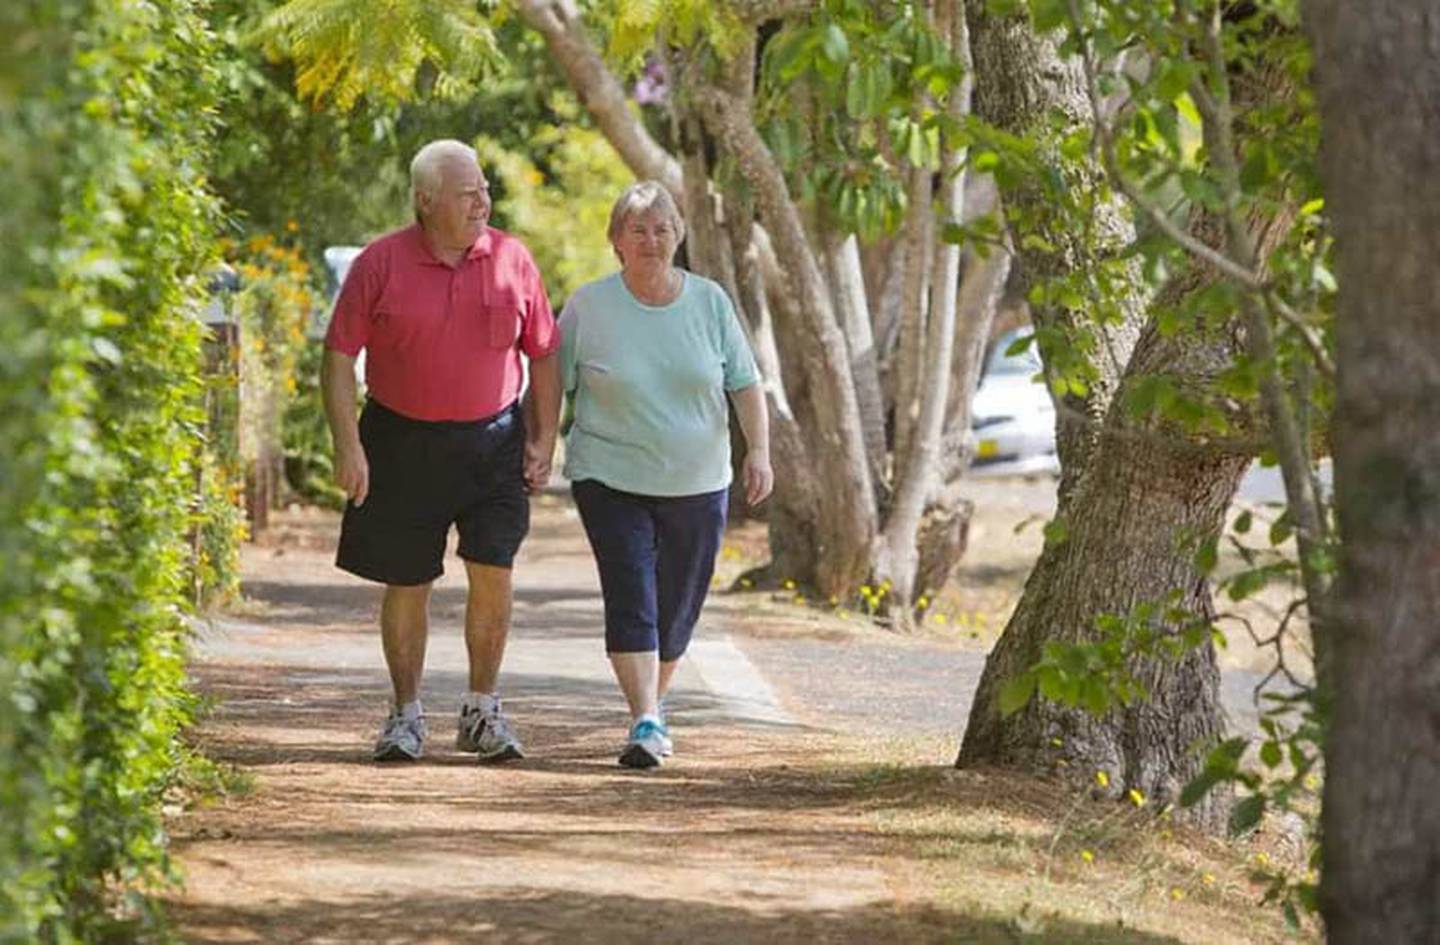 Caminar en zigzag ayuda a las personas mayores a preservar el equilibrio.